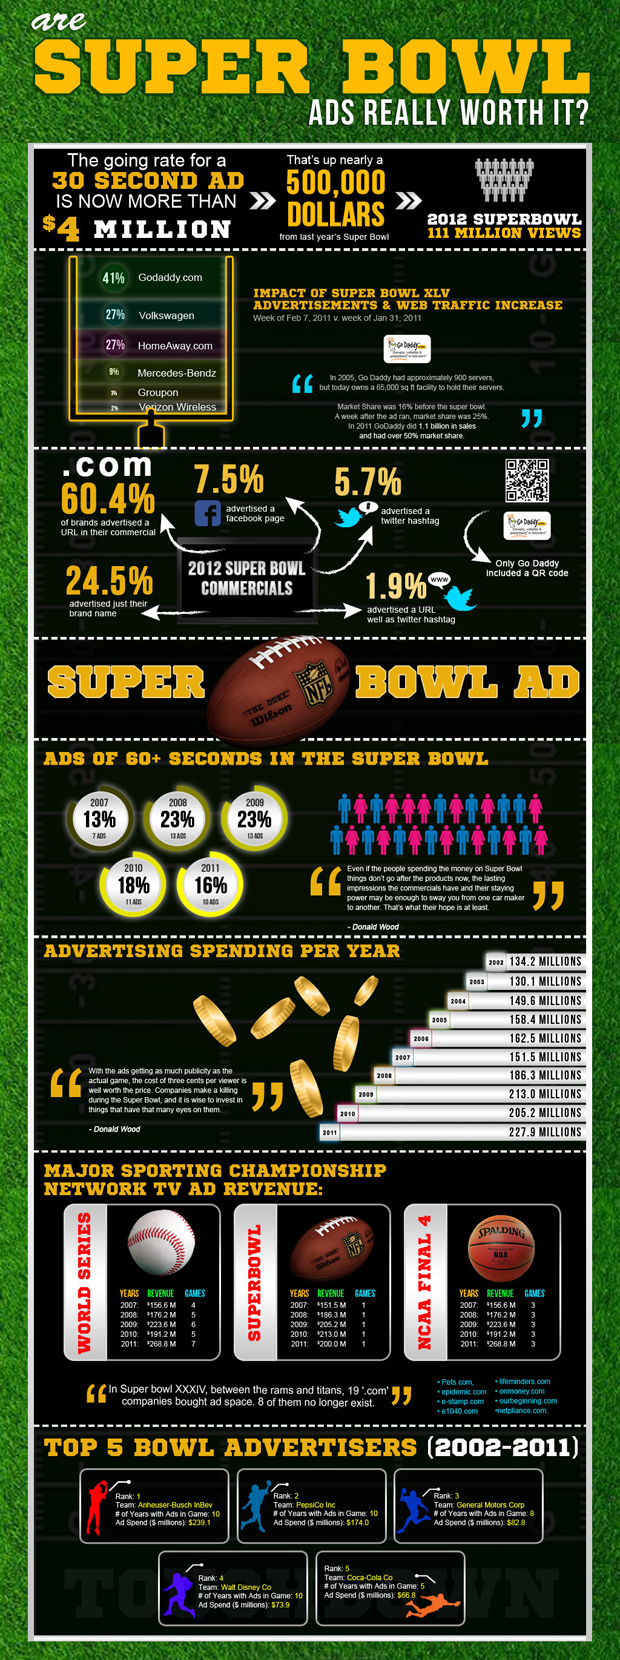 Quanto vale o Super Bowl? Clique na imagem para ampliar. Fonte: iSatellite